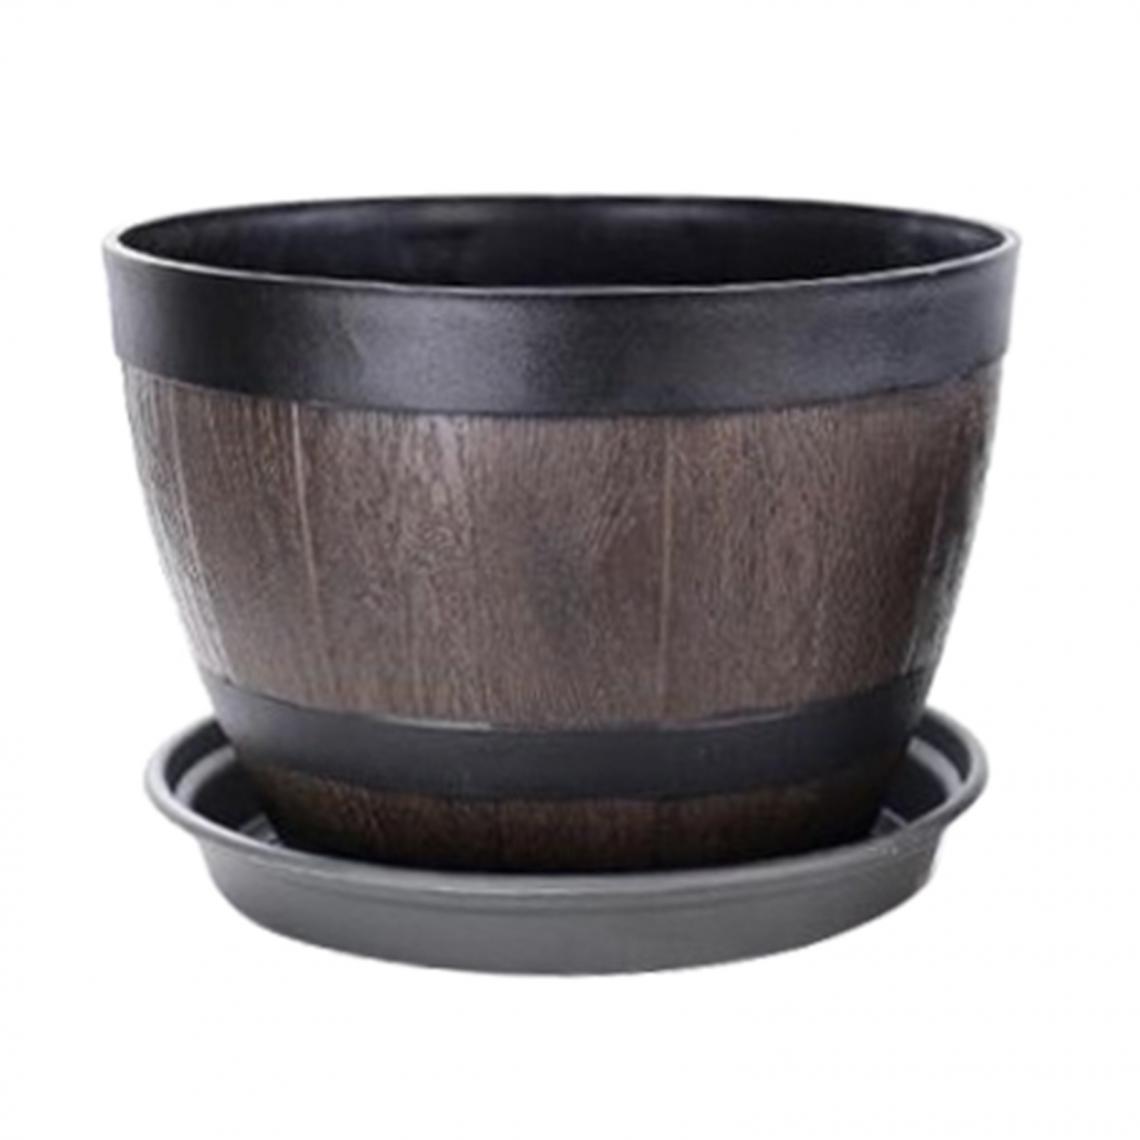 marque generique - Rétro Baril Planteur Intérieur Extérieur Pot de Fleur Pot pour Home Office Café Bar Décor - Pots, cache-pots